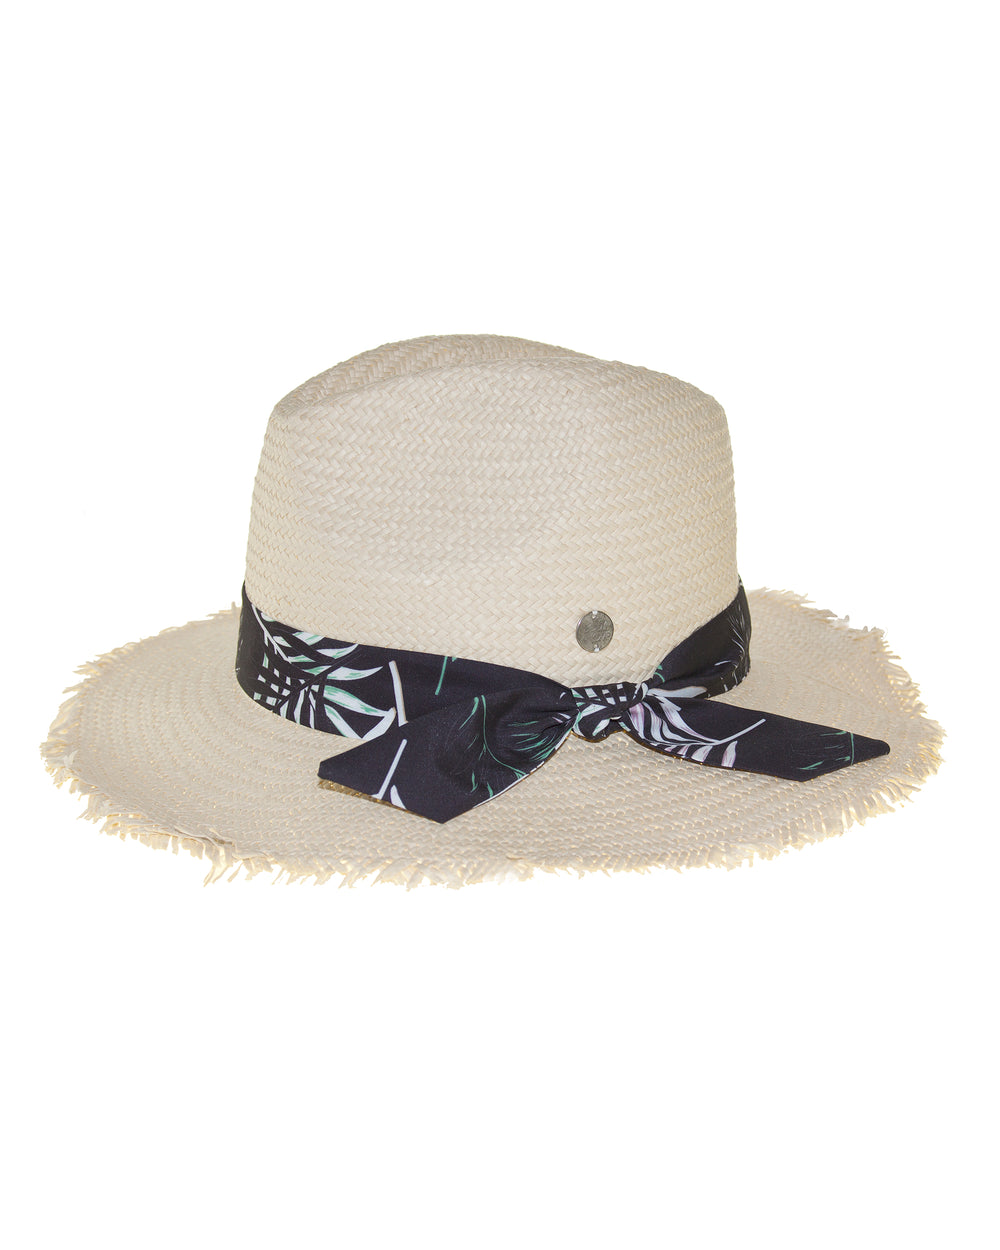 Woven Straw Panama Hat - Multi Palm